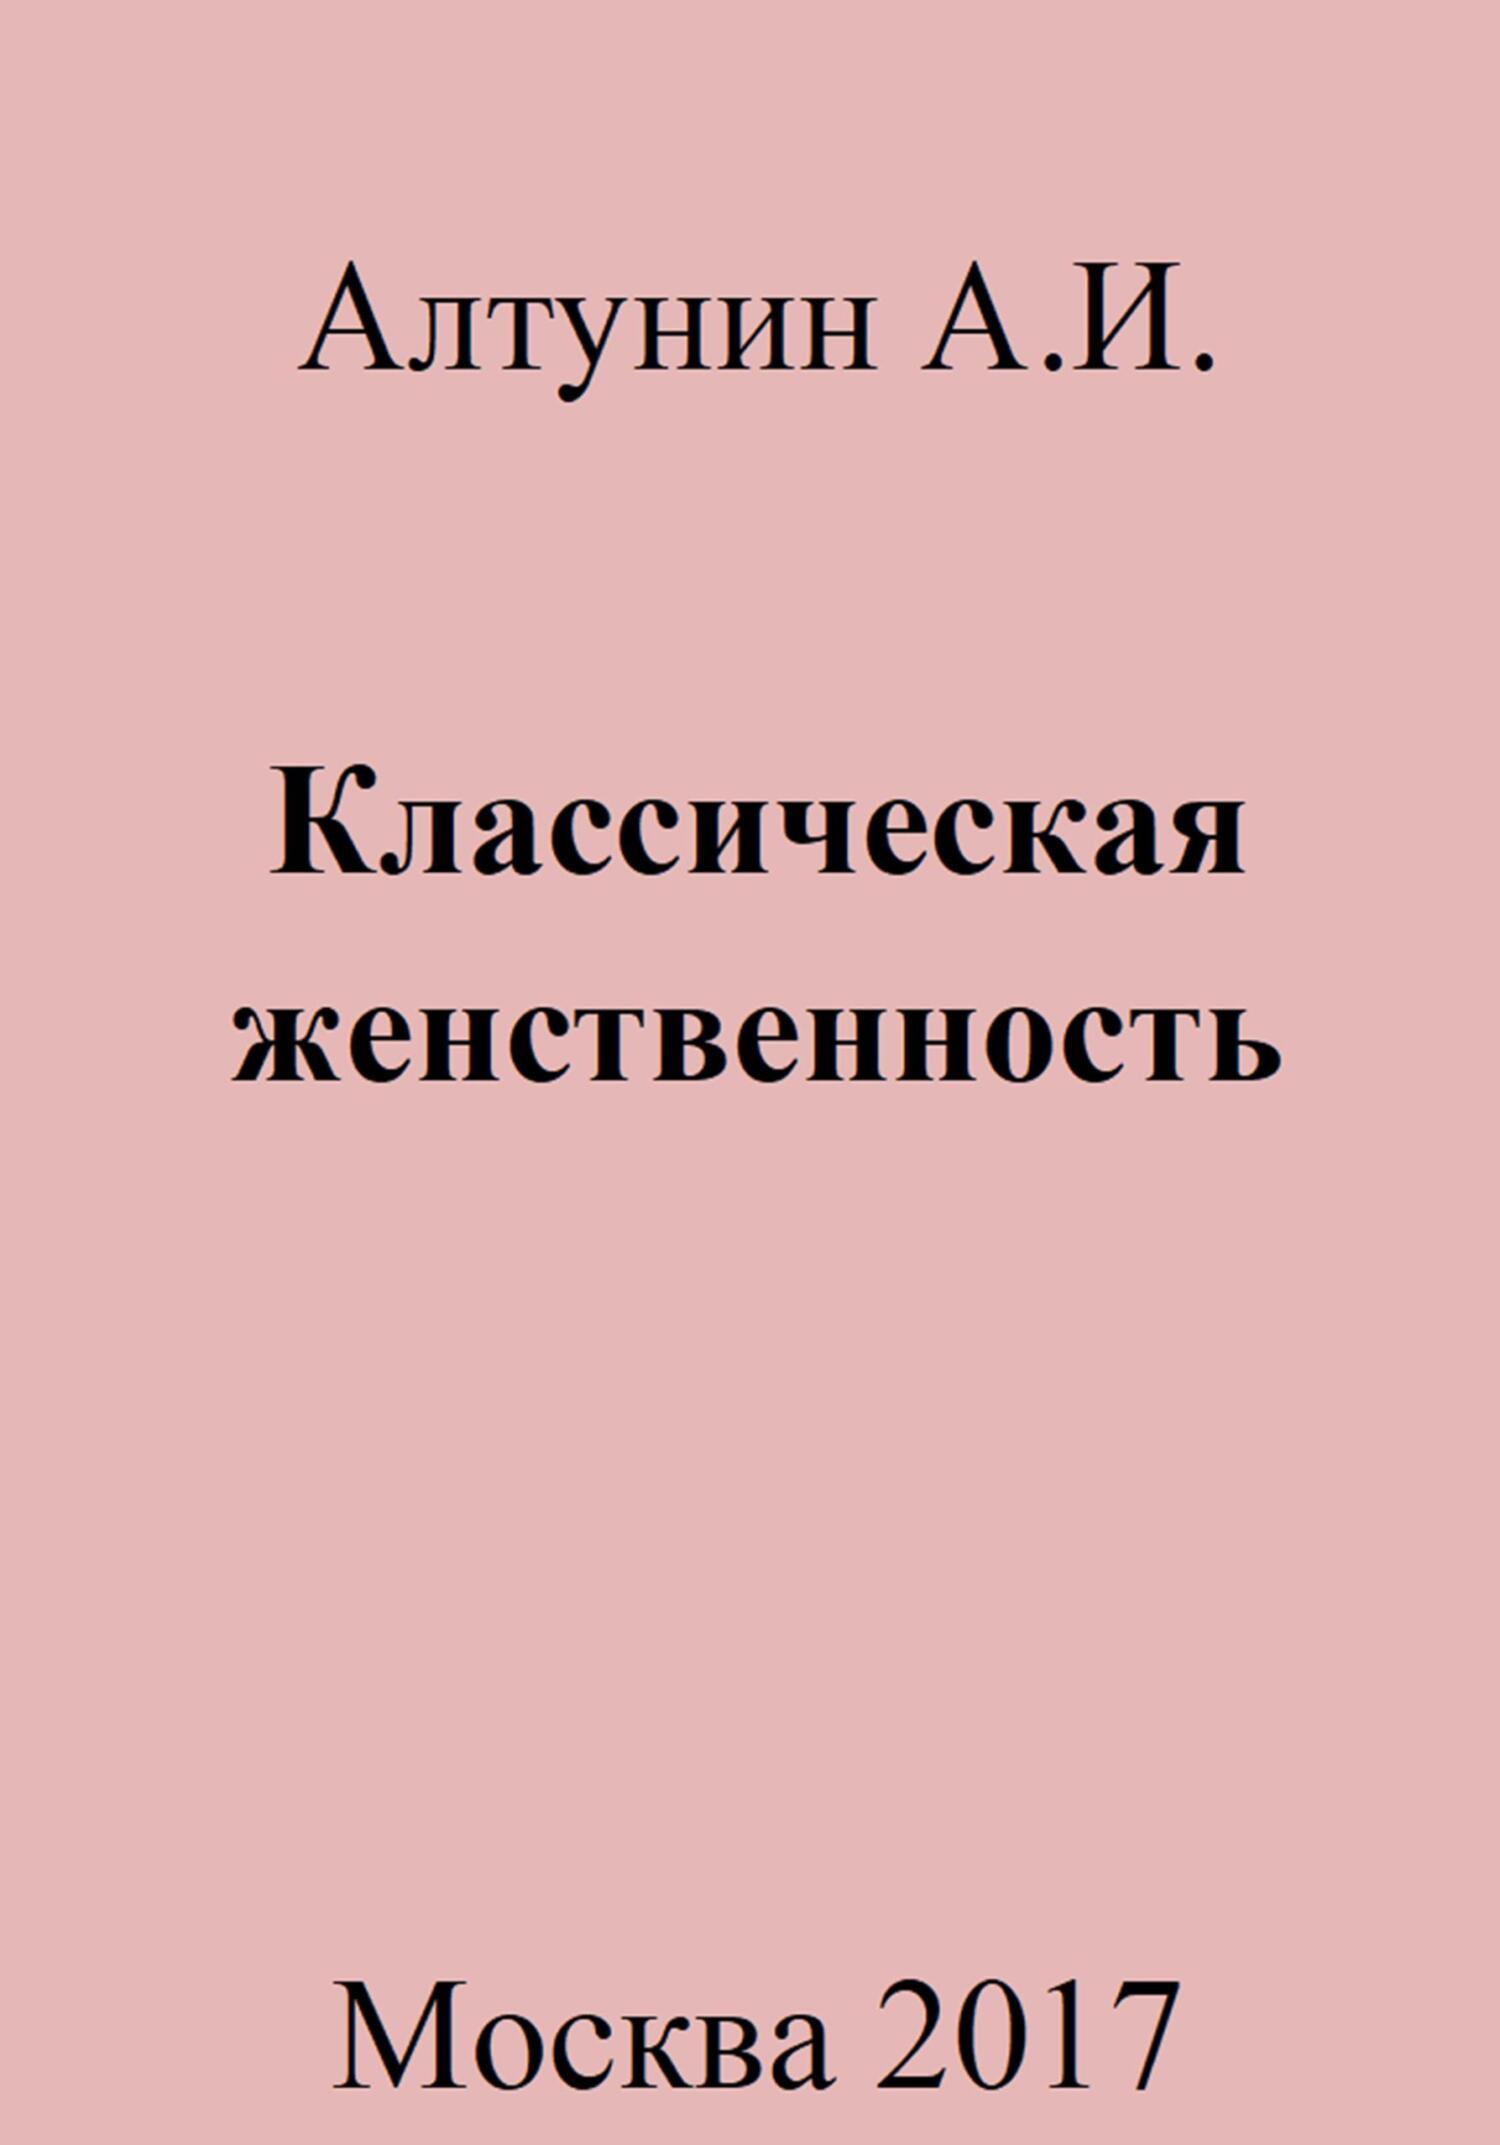 Классическая женственность - Александр Иванович Алтунин